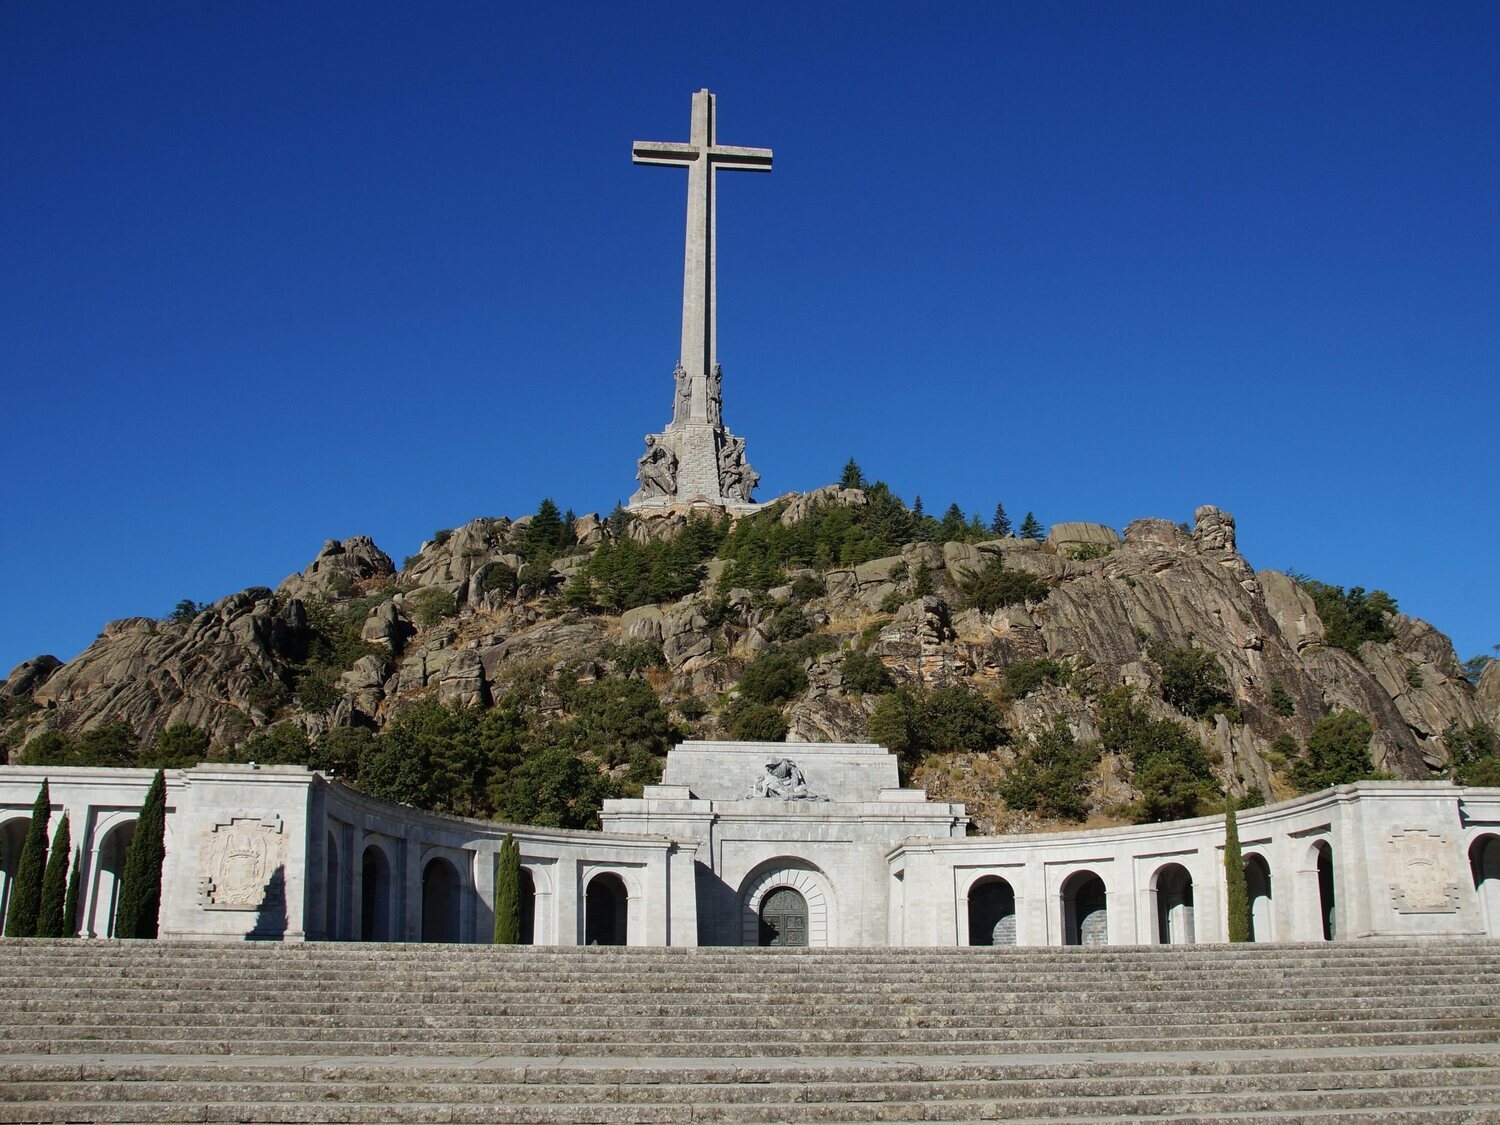 El Gobierno cambiará el nombre del Valle de los Caídos, que pasará a ser de Cuelgamuros